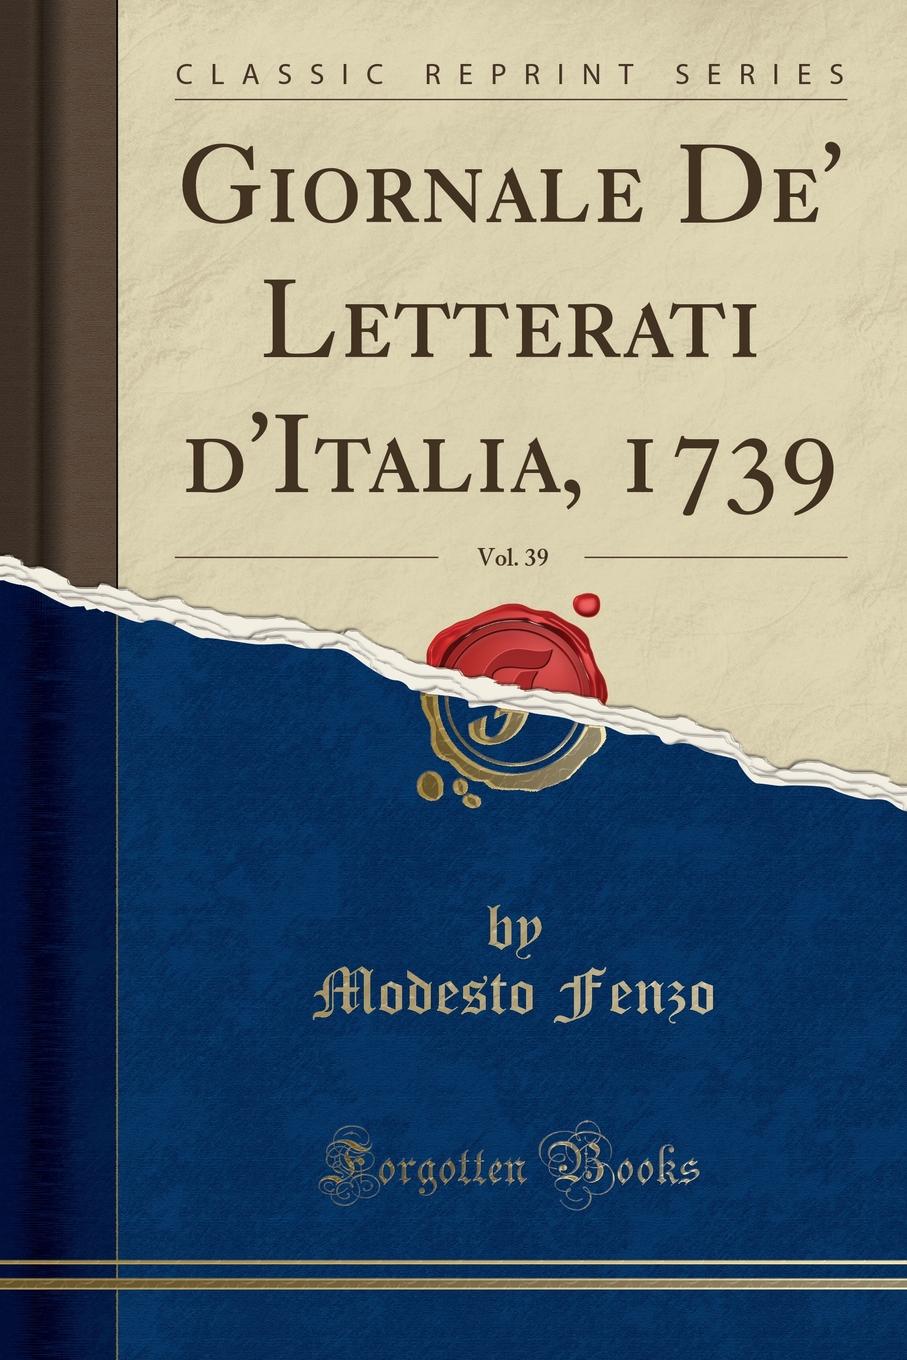 Modesto Fenzo Giornale De. Letterati d.Italia, 1739, Vol. 39 (Classic Reprint)